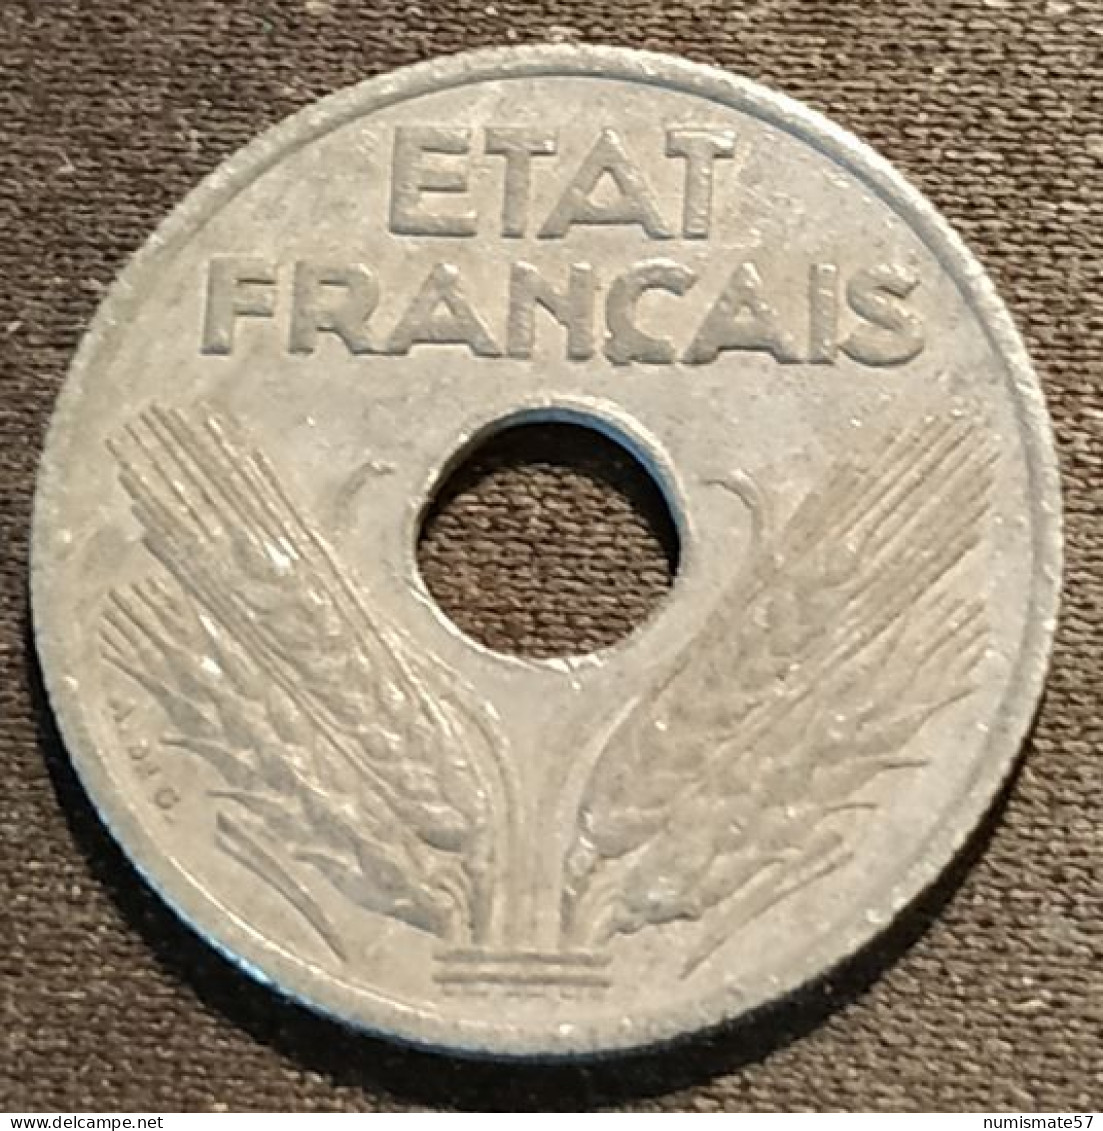 FRANCE - 10 CENTIMES 1941 - Etat Français - Grand Module - Gad 290 - KM 898 - 10 Centimes